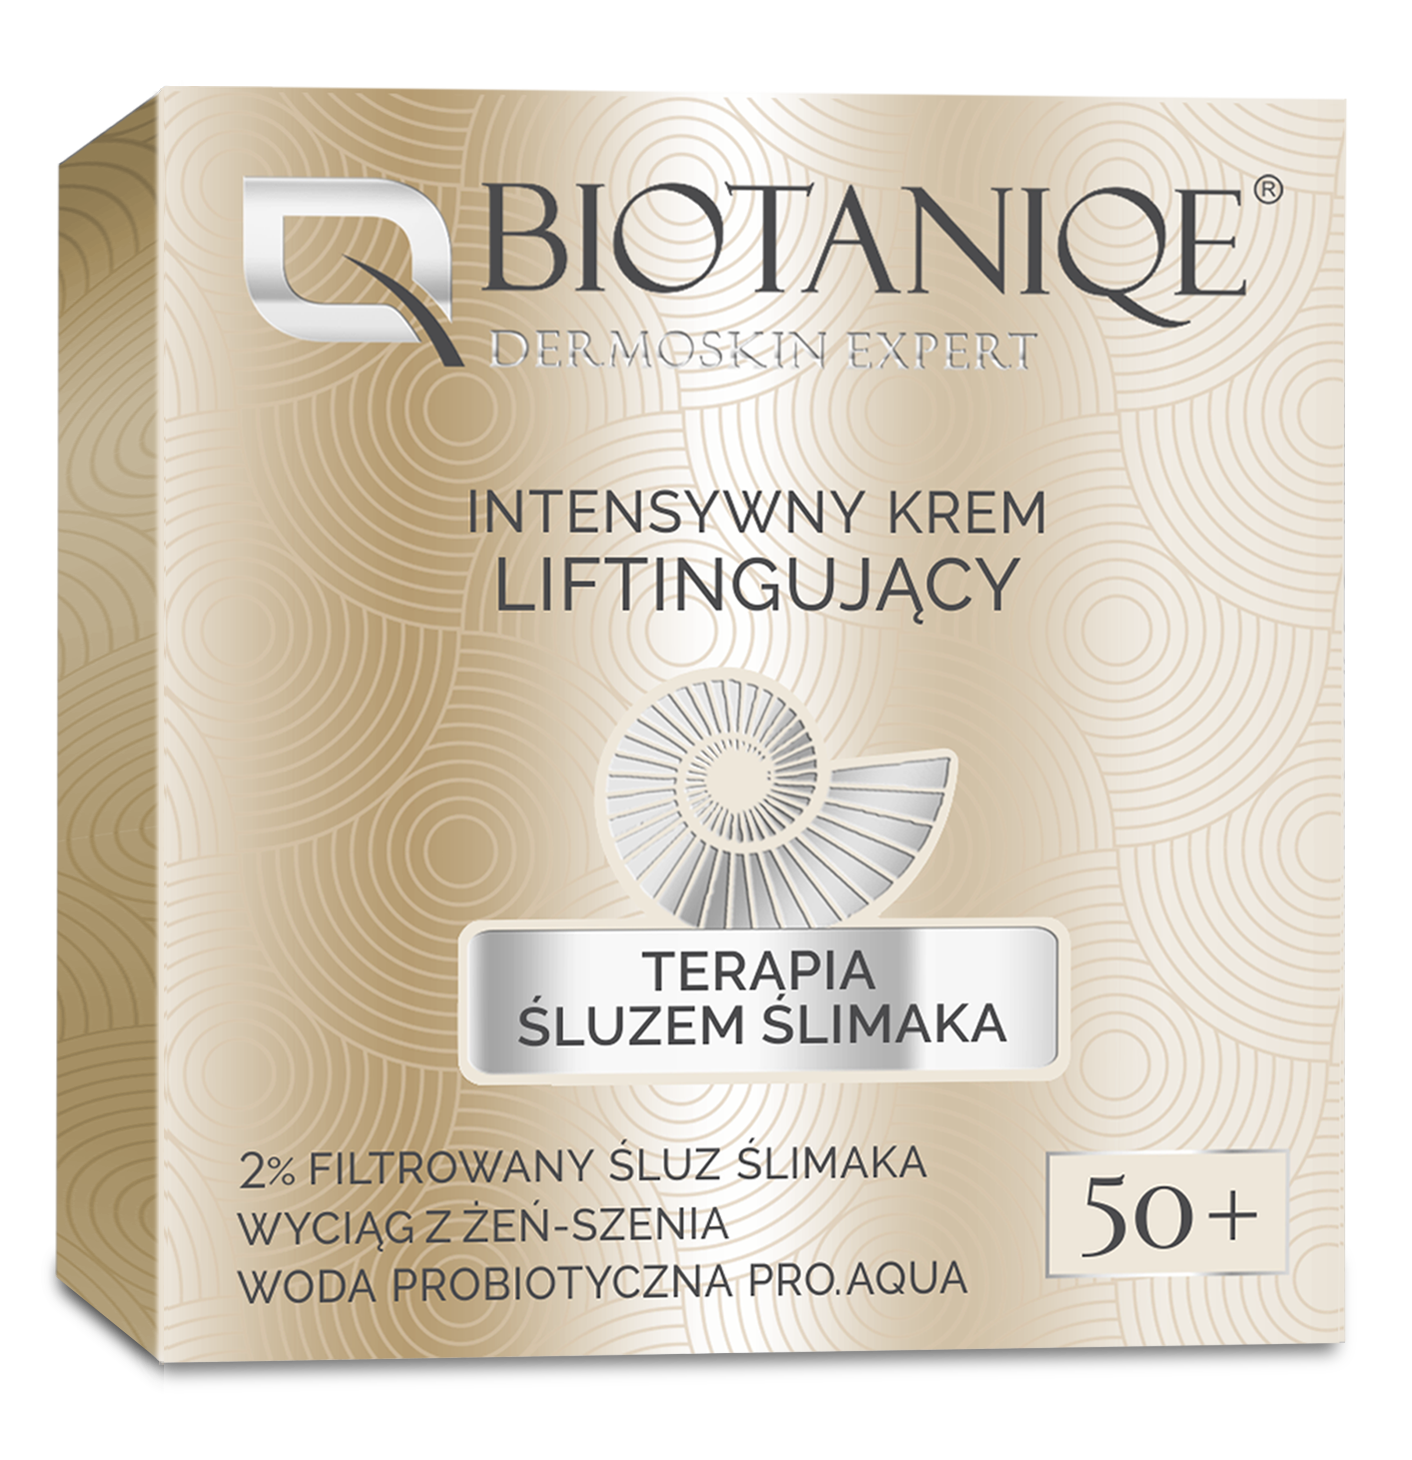 Biotaniqe, Terapia Śluzem Ślimaka, Intensywny Krem Liftingujący 50+, 50 ml